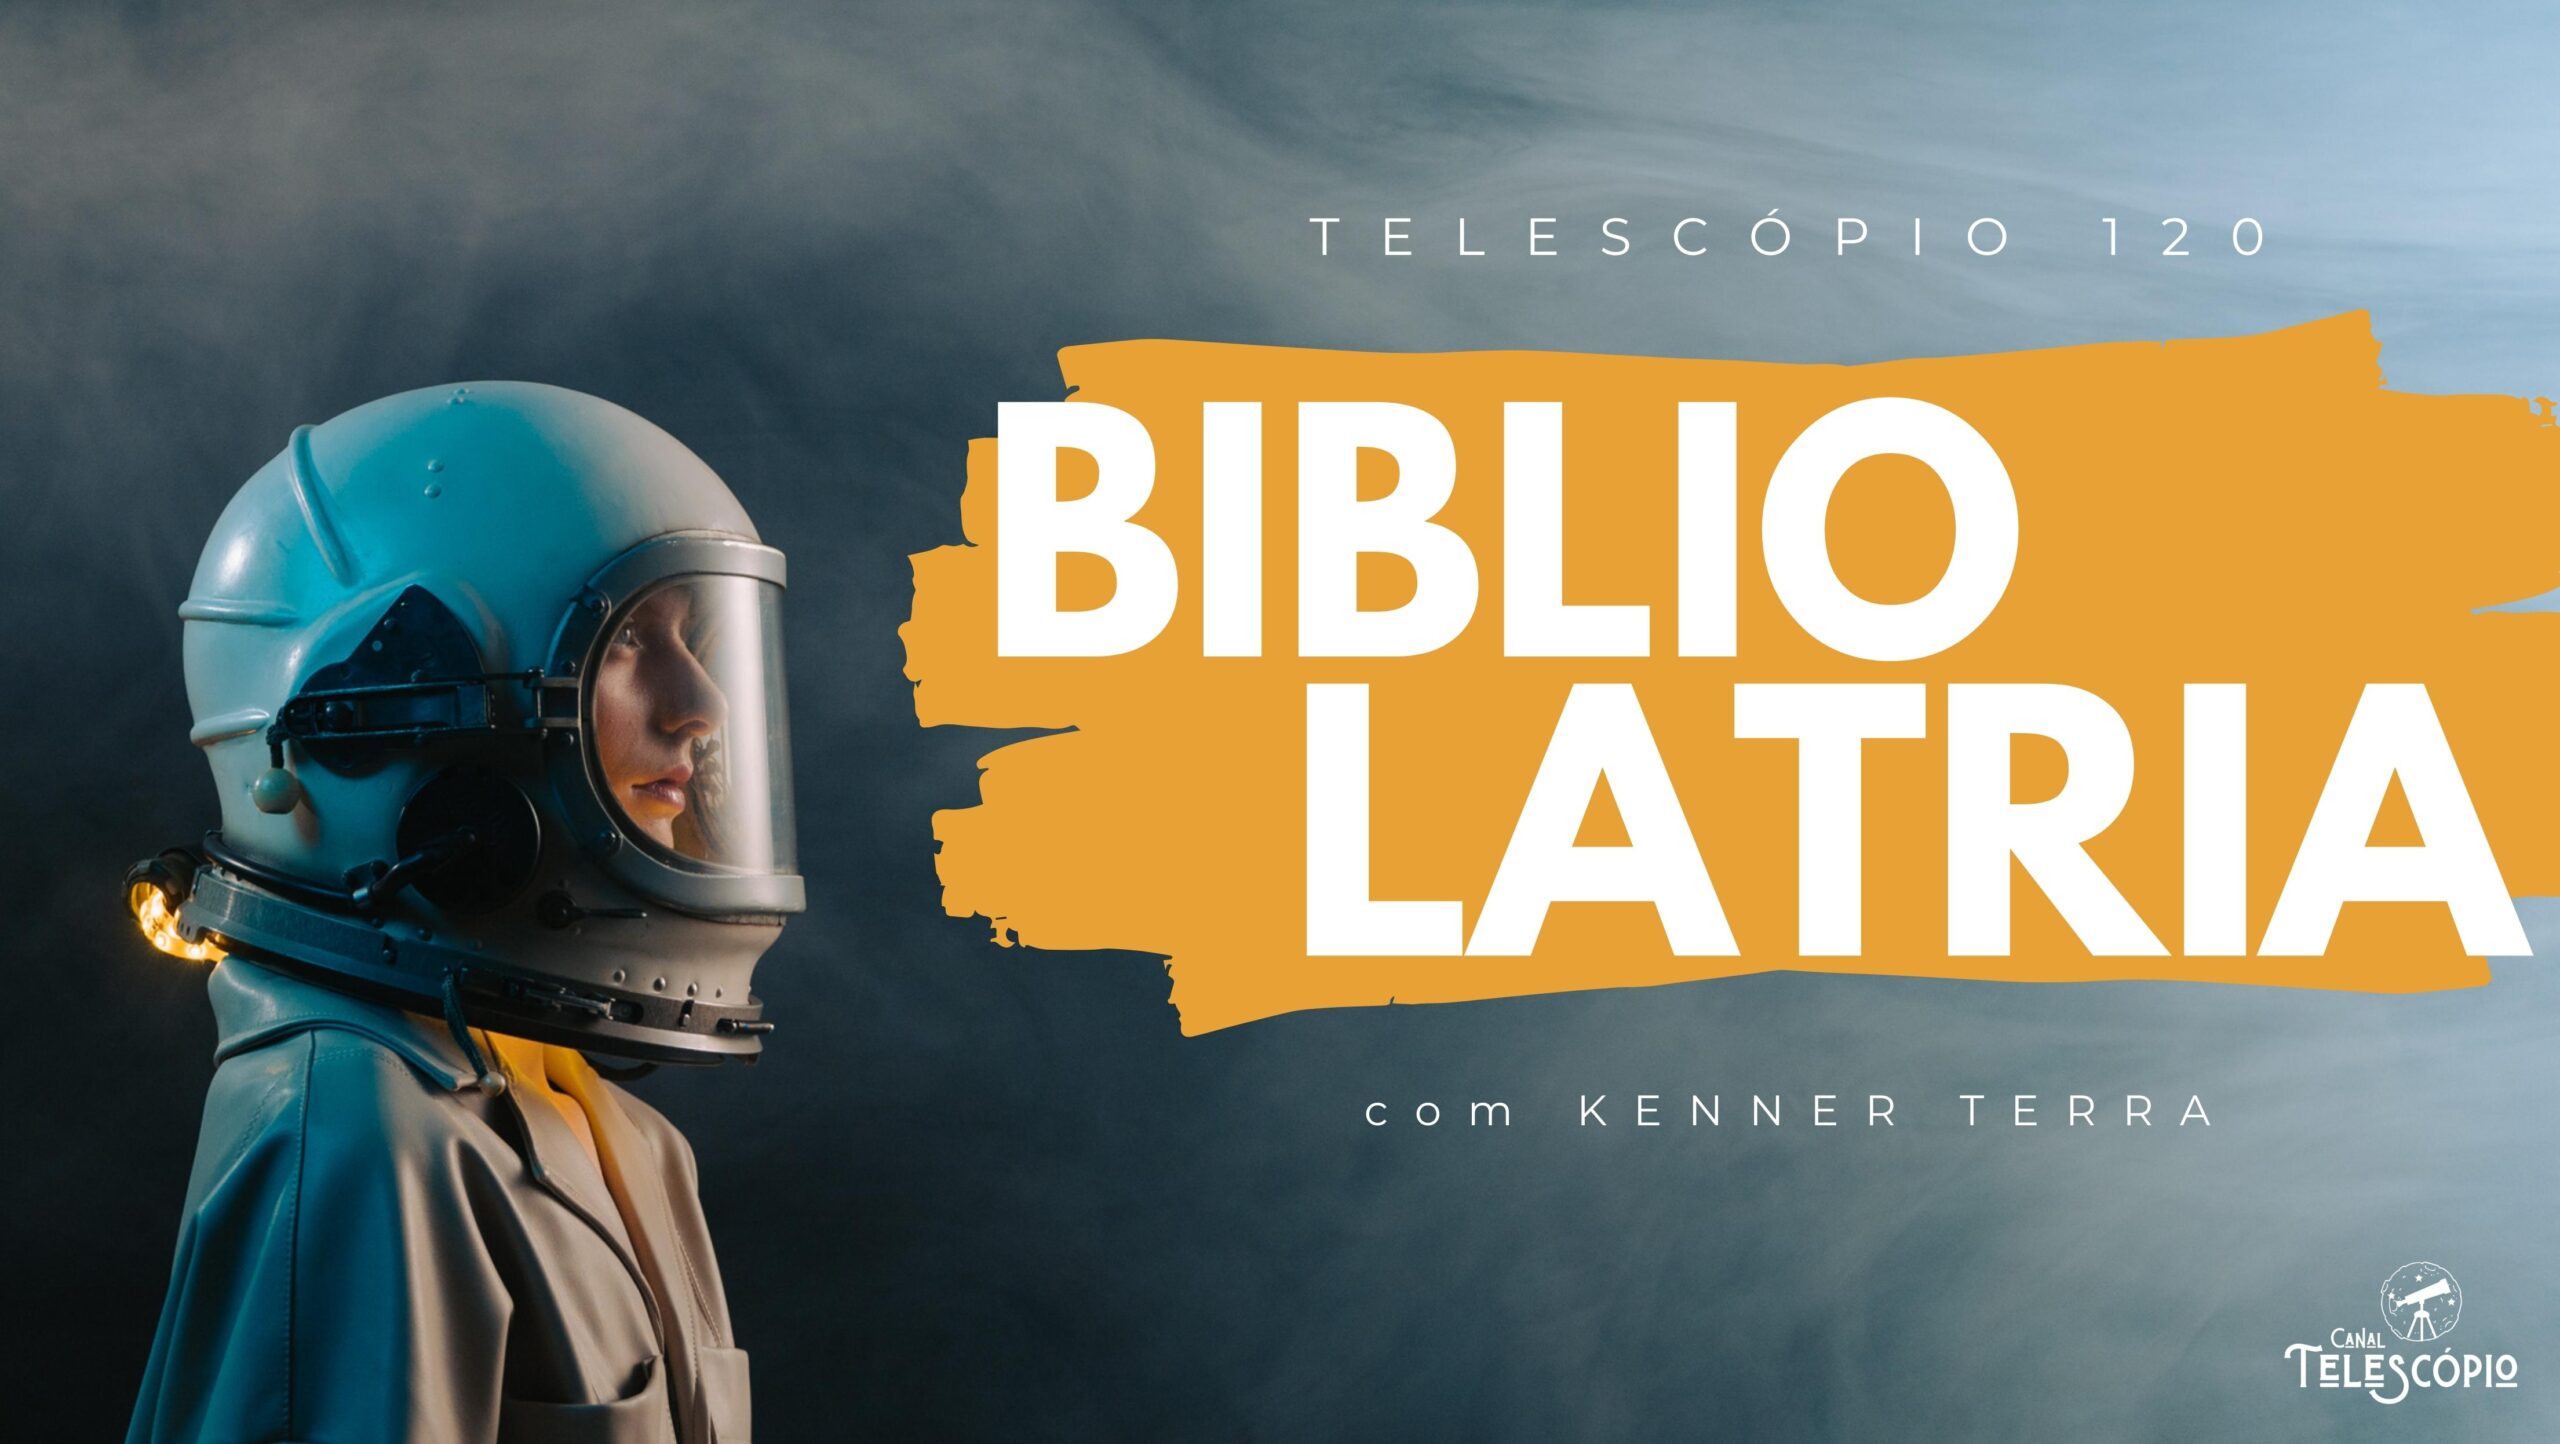 Imagem de fundo de um astronauta de lado, olhando pra frente de forma fixa. Na frente, letreiro com o título do programa: "Bibliolatria" com Kenner Terra.